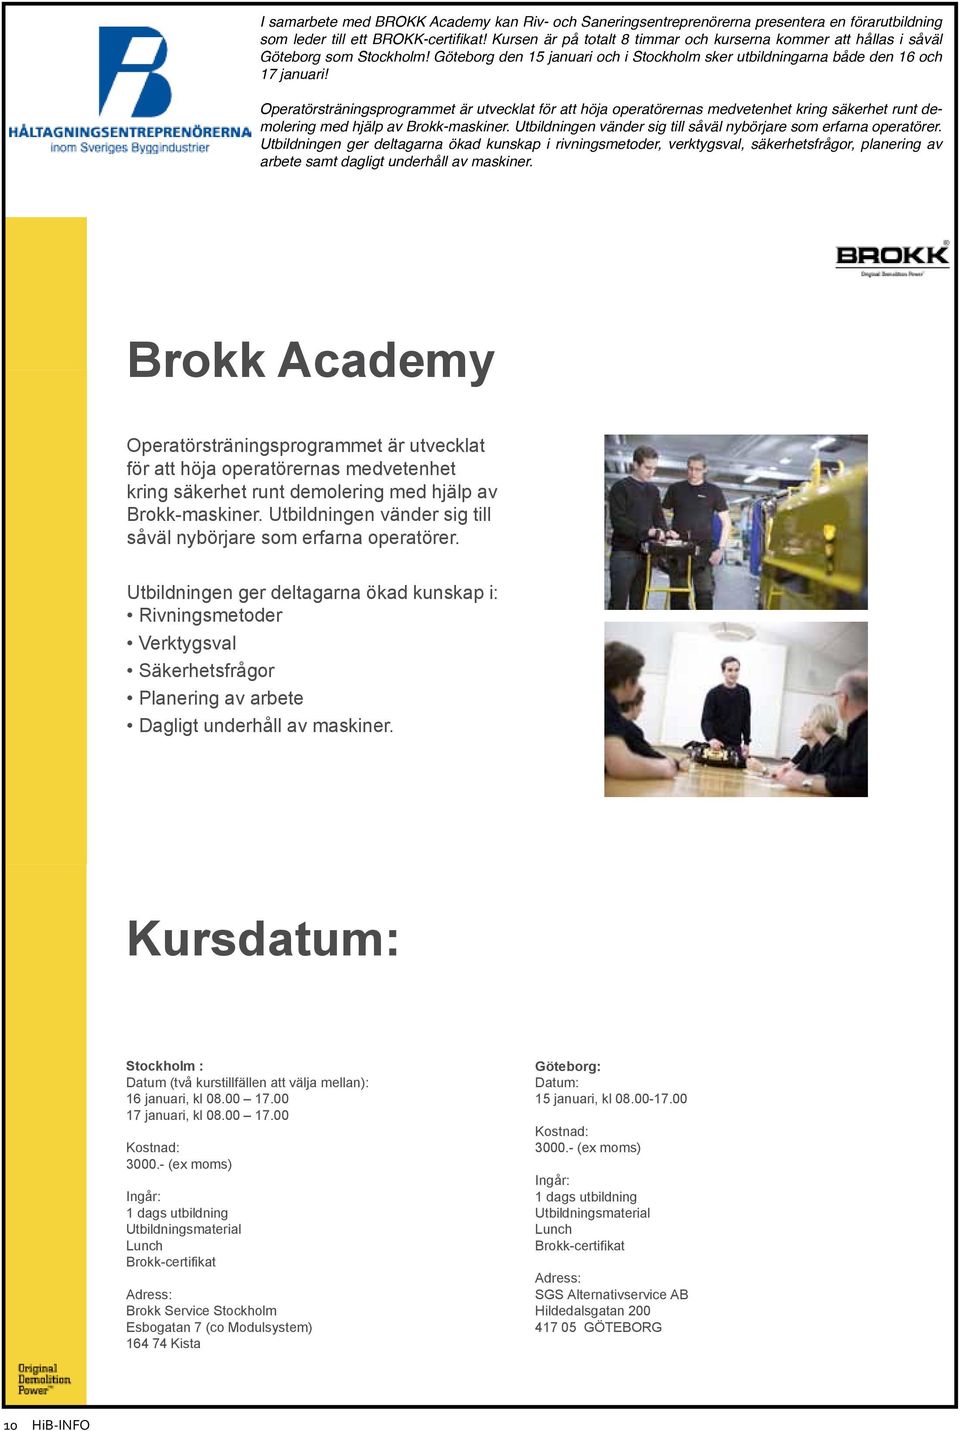 Operatörsträningsprogrammet är utvecklat för att höja operatörernas medvetenhet kring säkerhet runt demolering med hjälp av Brokk-maskiner.